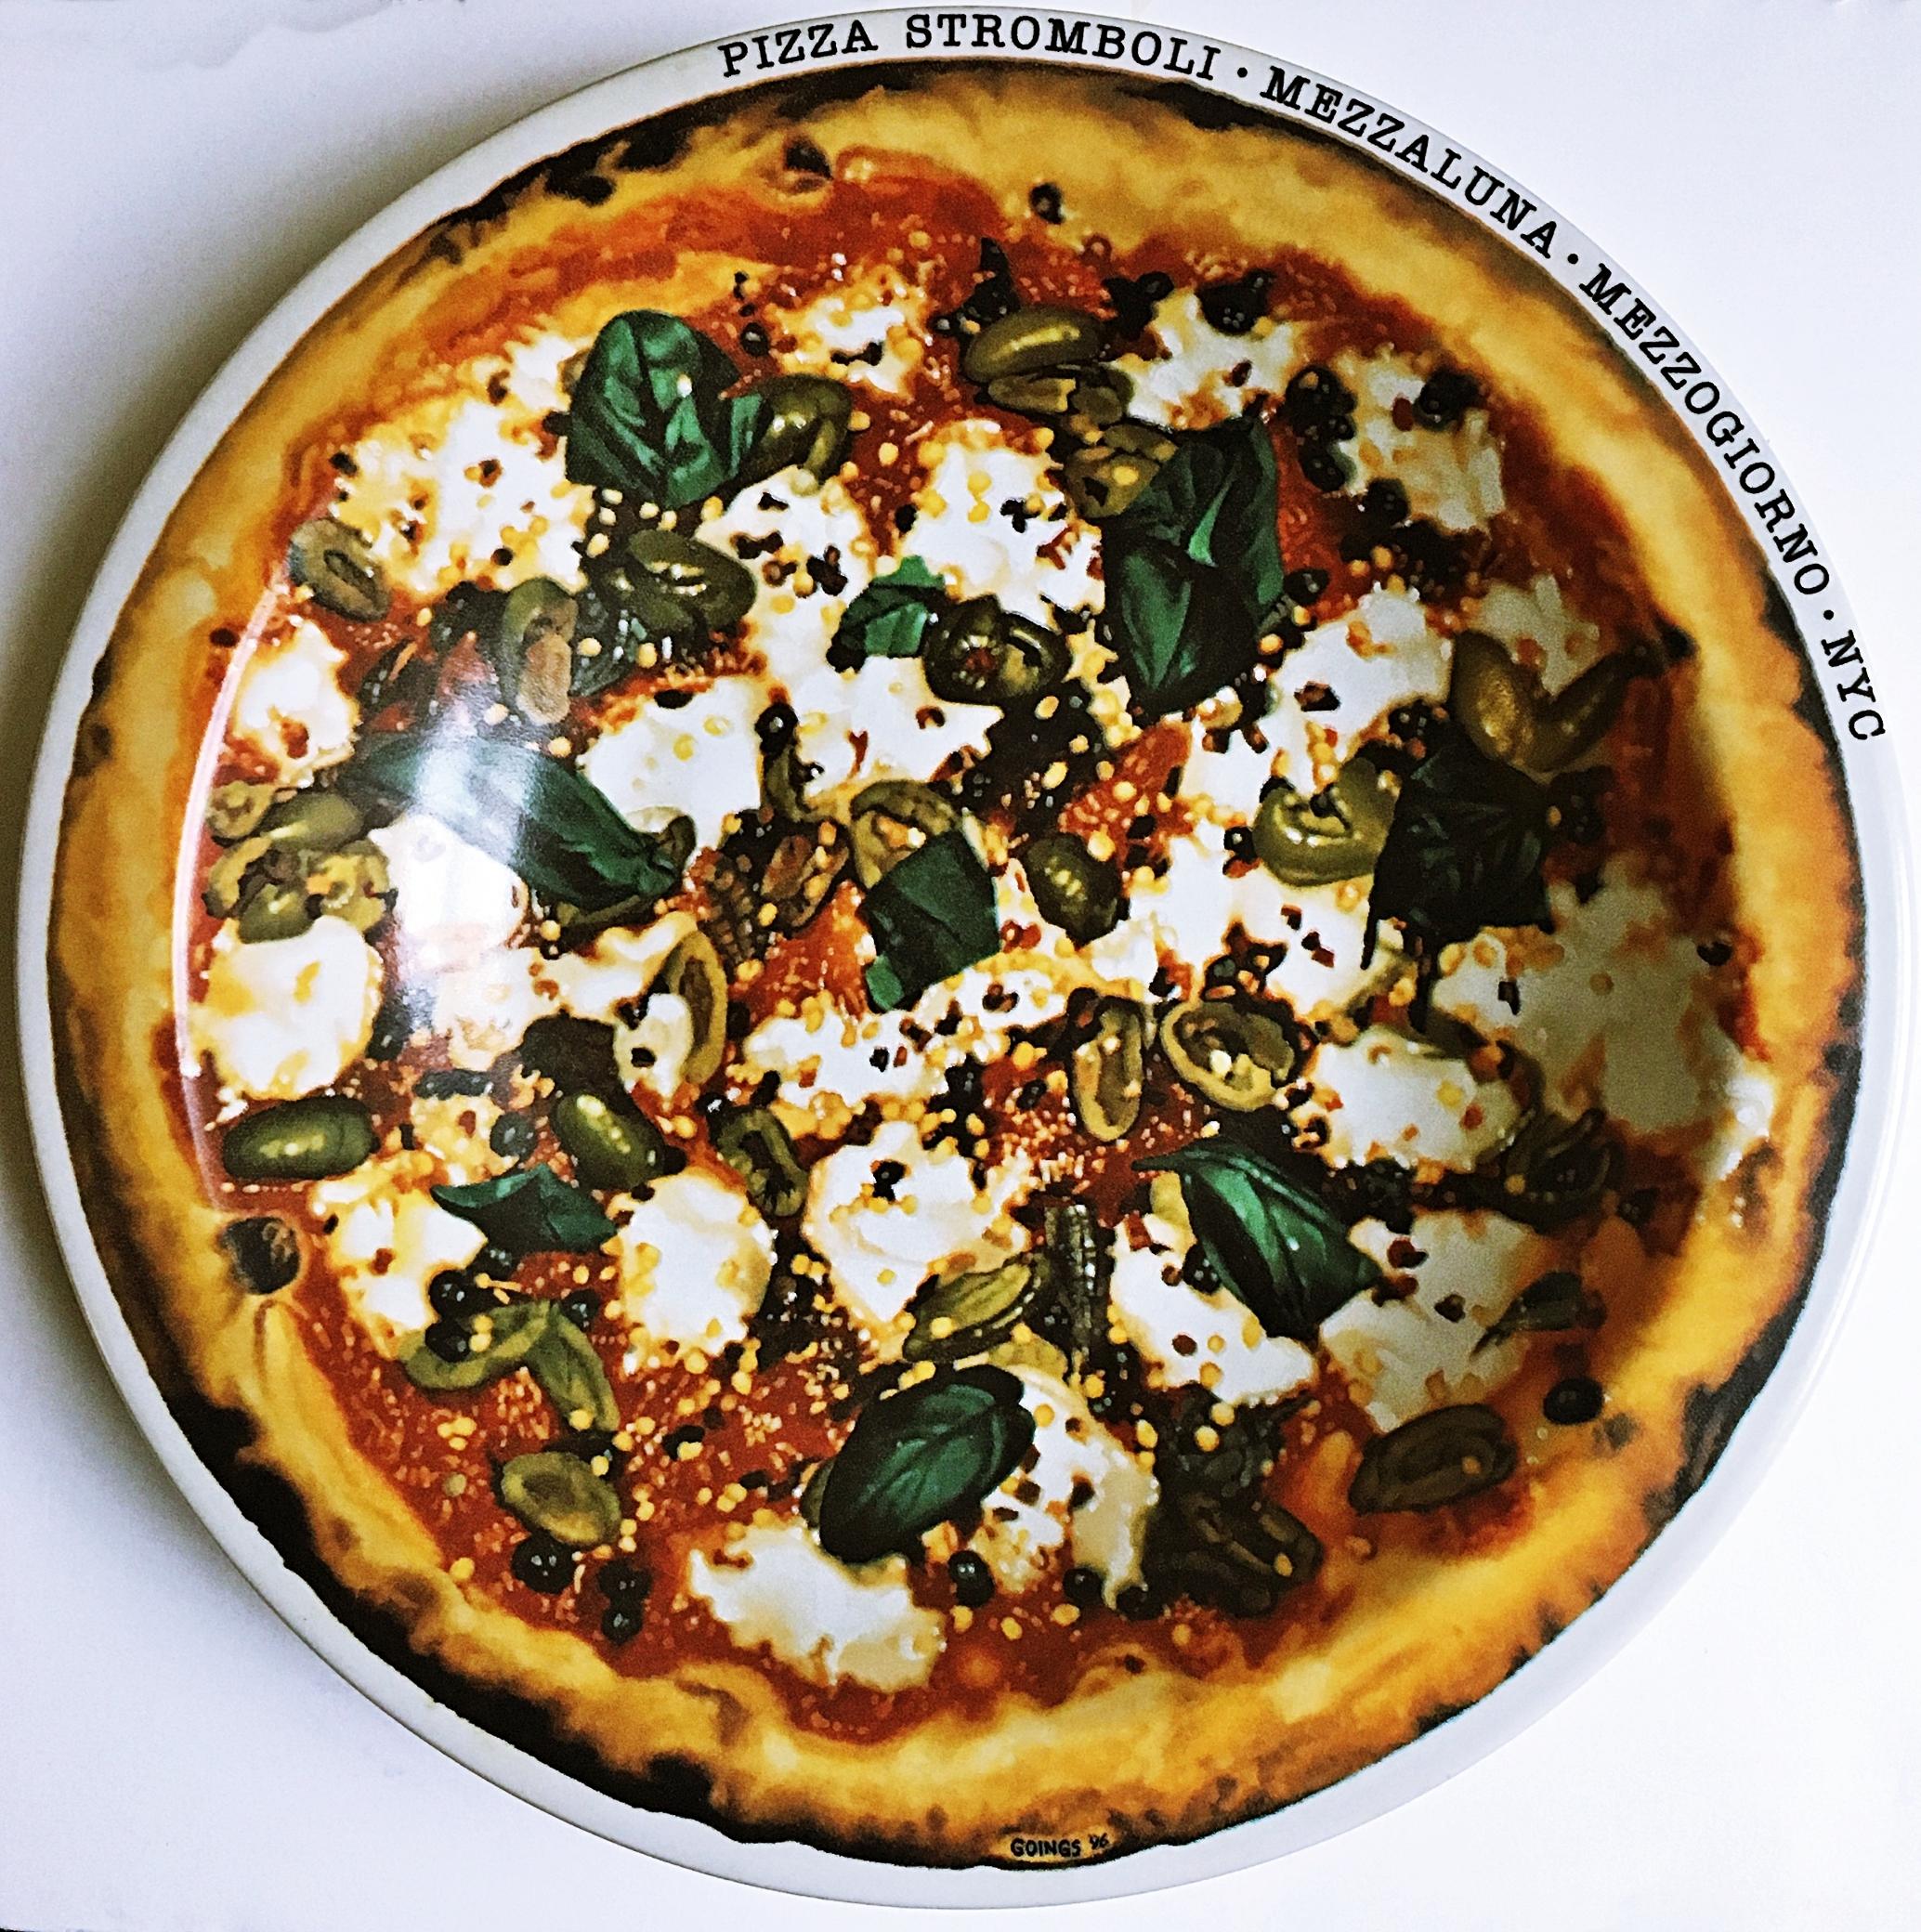 Art about Food Pizza Stromboli Mezzalluna - Mezzogiorno - New York, NY (Plate)  - Mixed Media Art by Ralph Goings